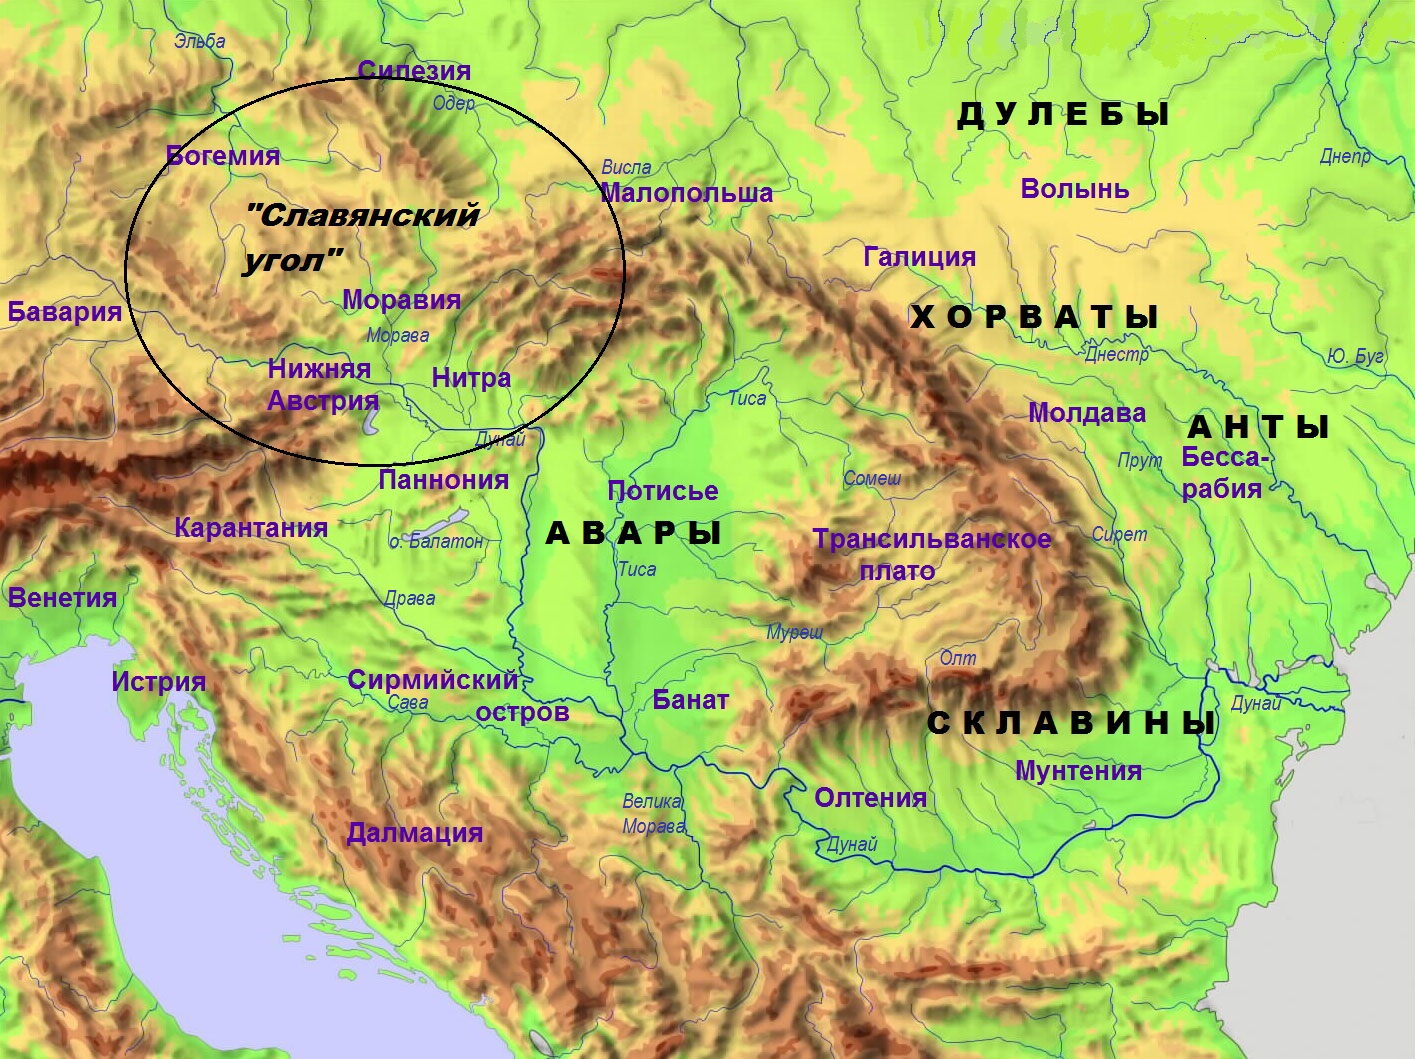 Место вероятной концентрации славянских этнических элементов в Аварском каганате 7-8 веков